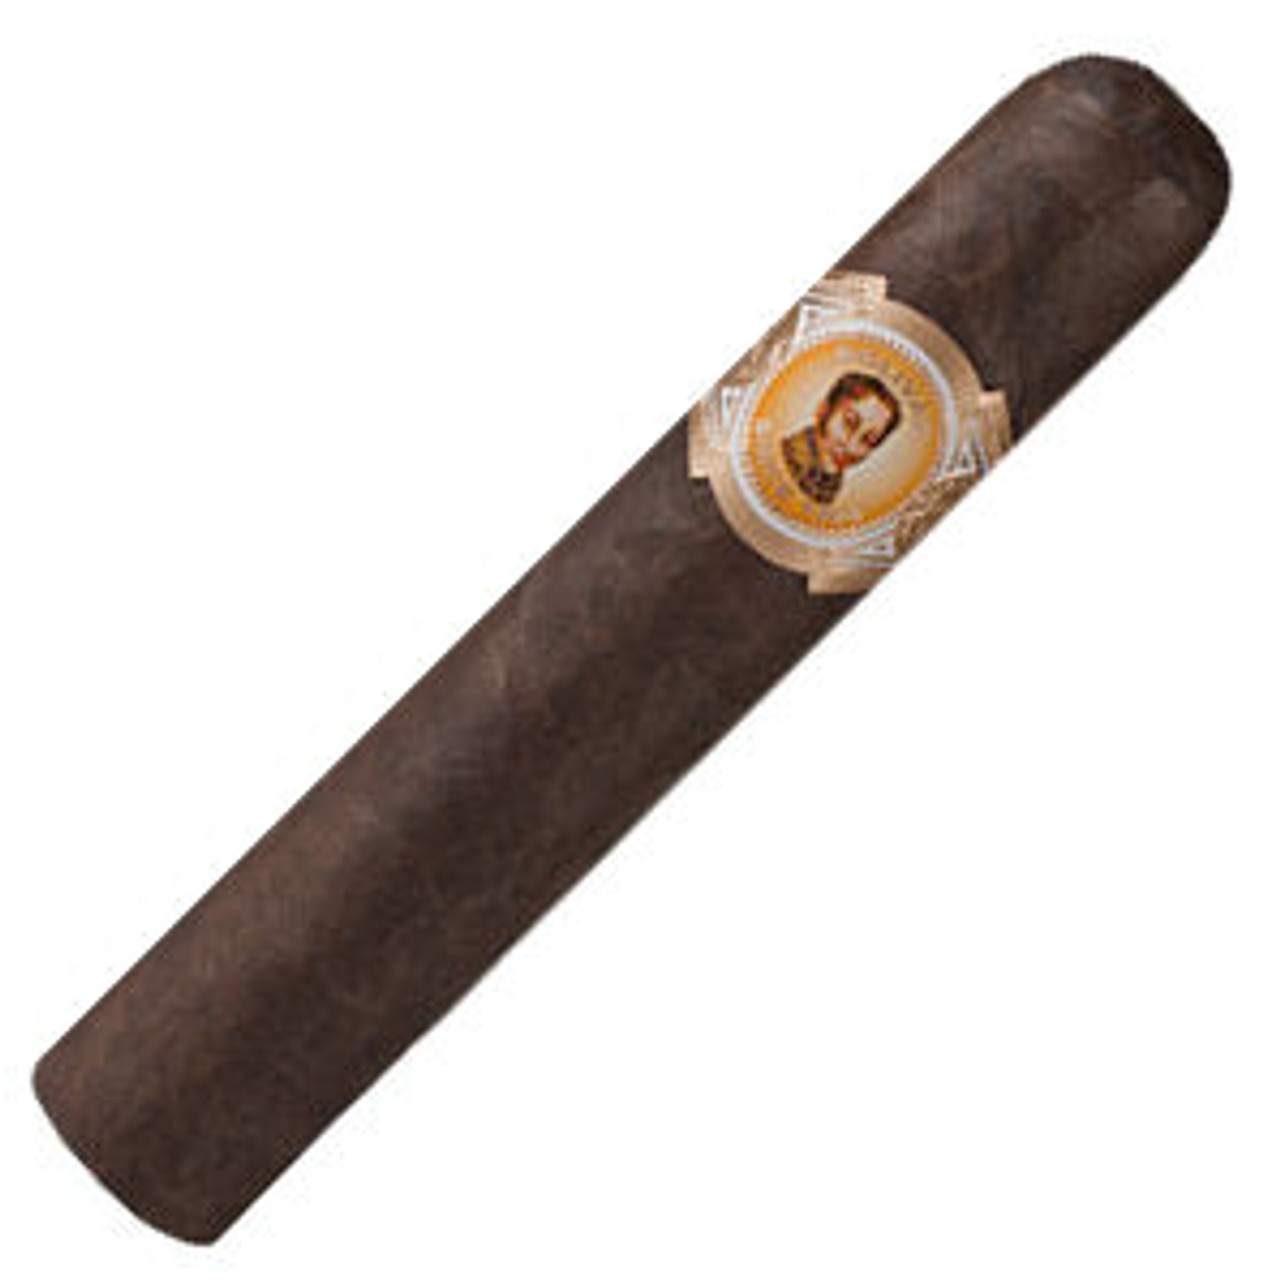 Bolivar Cofradia No. 554 Oscuro Cigars - 5 x 54 Single